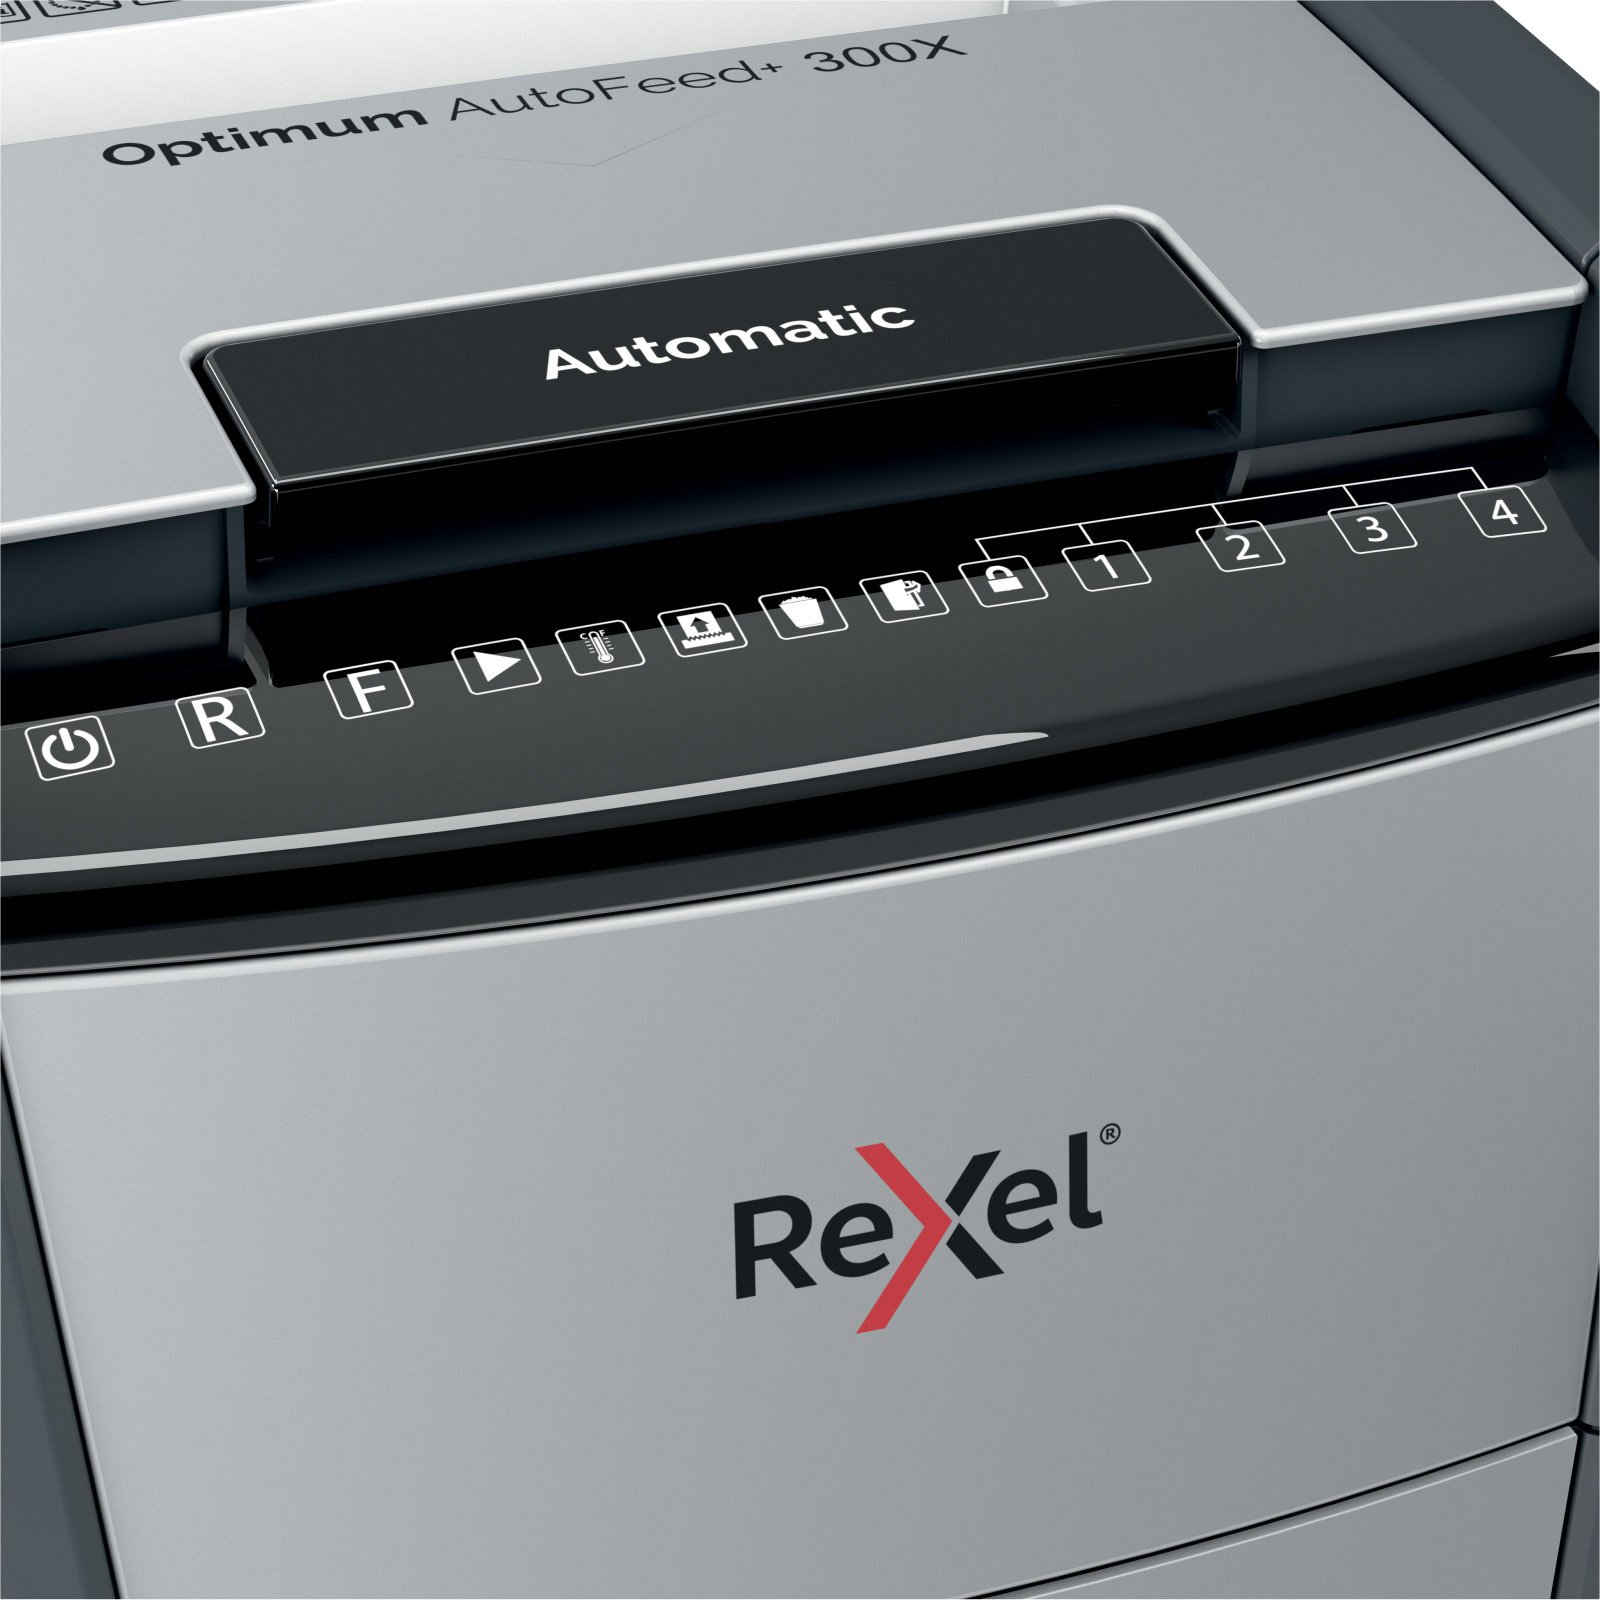 Rexel Optimum AutoFeed+ 300X makulator AutoFeed+ 300X 60 l